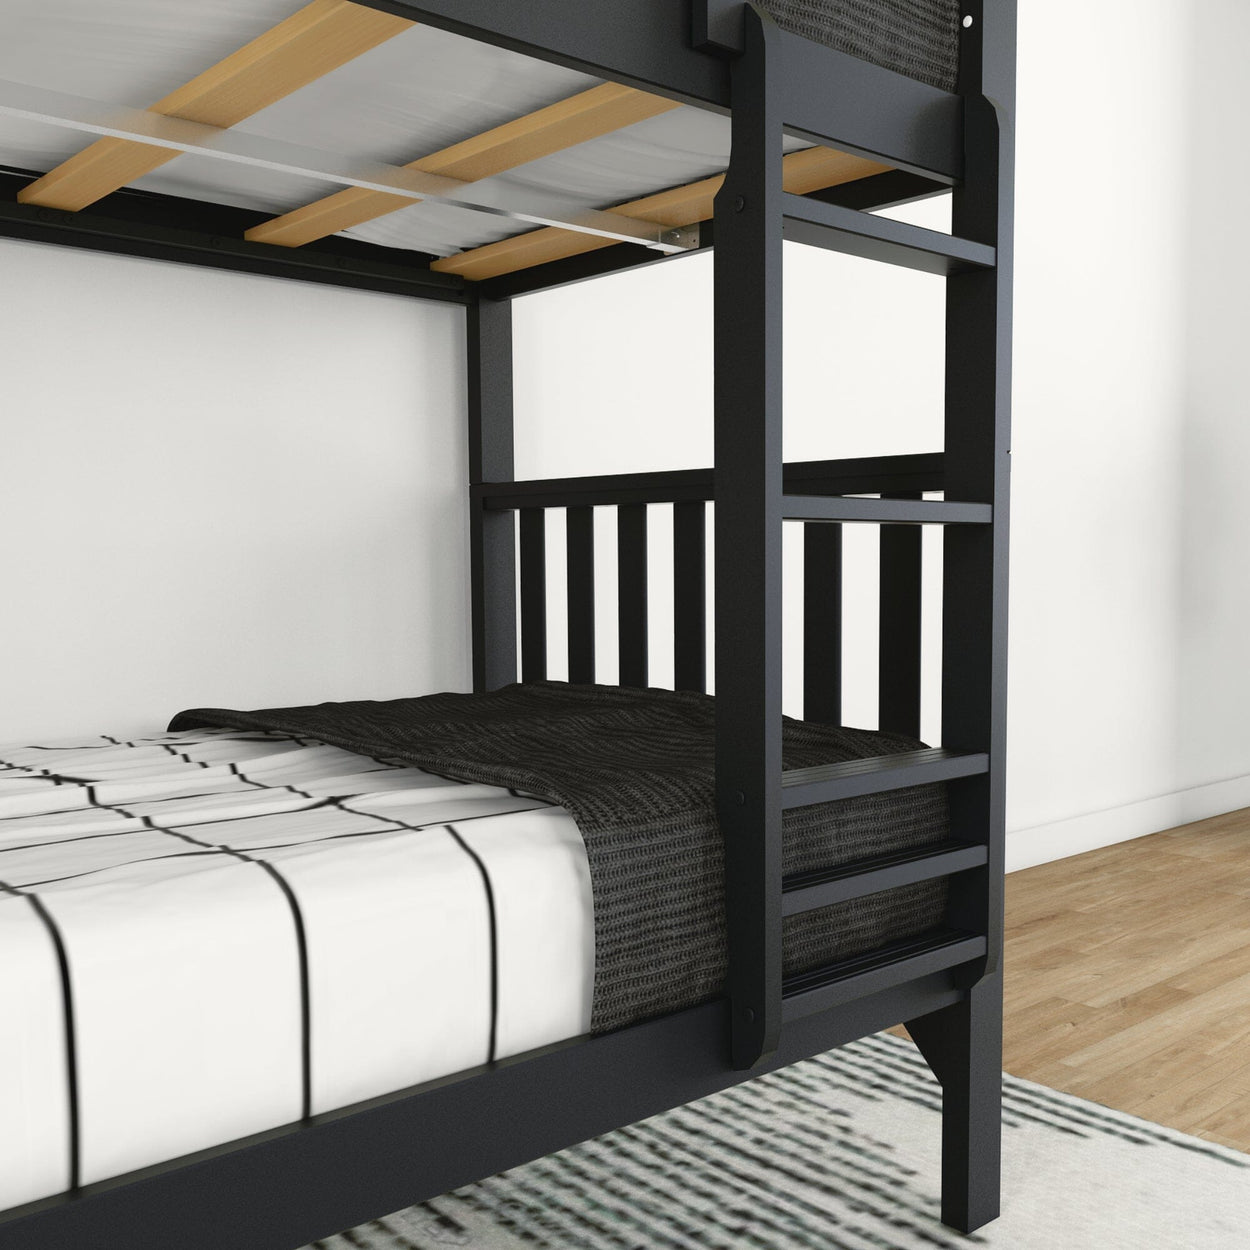 210201-170 : Bunk Beds Scandinavian Twin over Twin Bunk Bed, Black